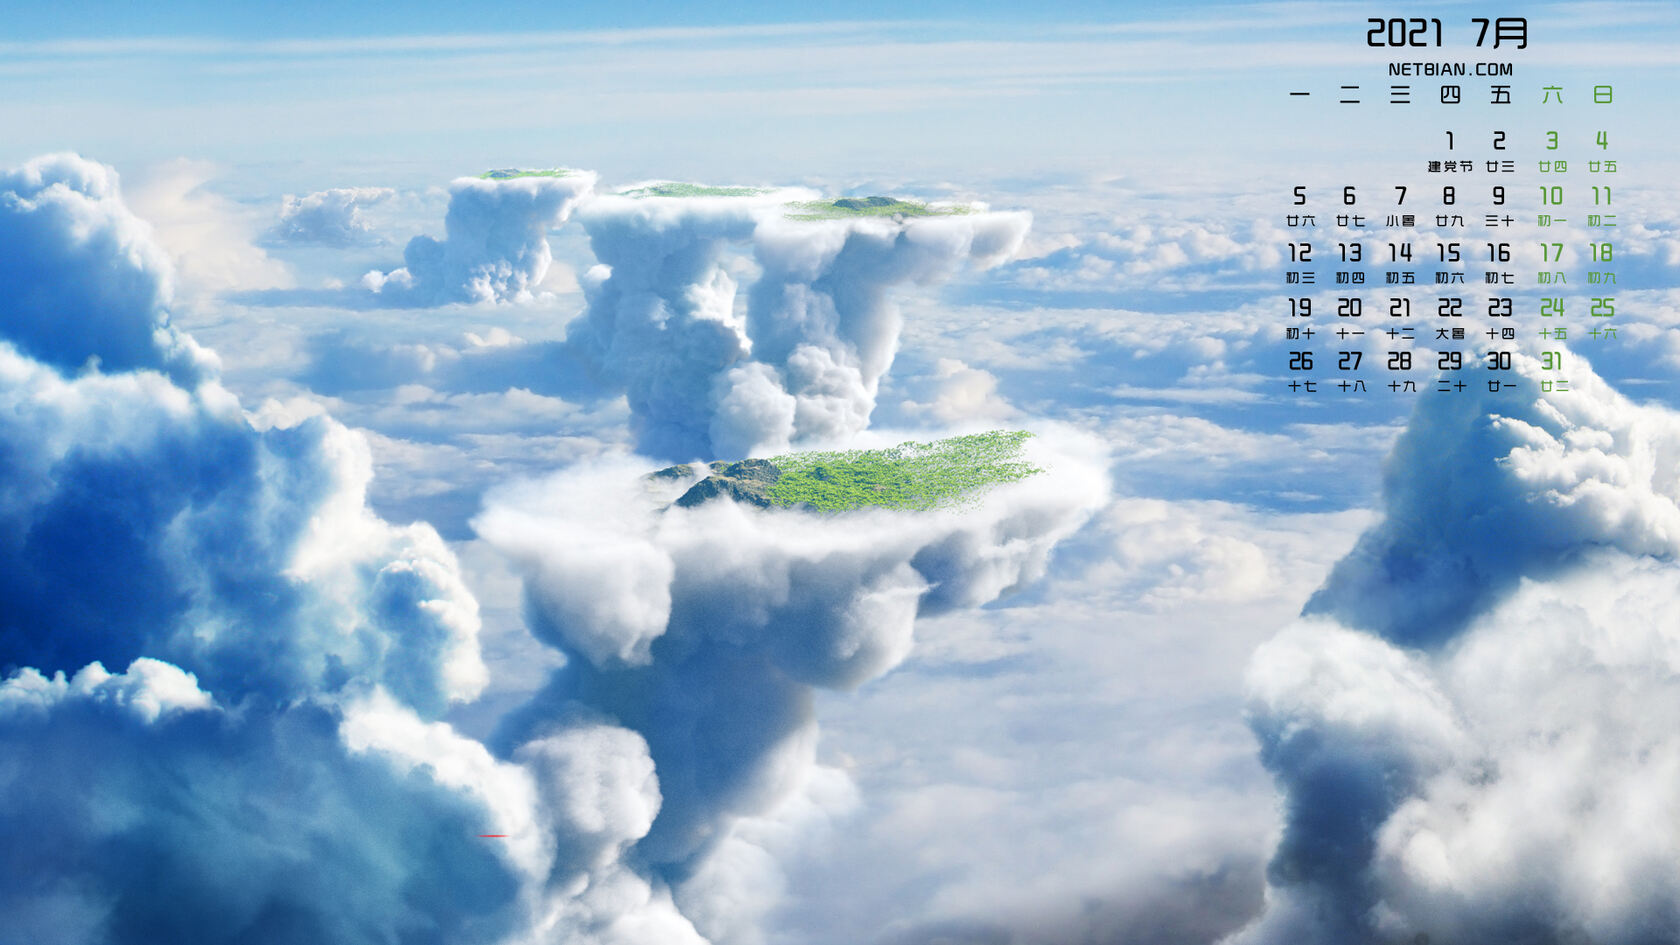 2021年7月日历壁纸，天空，云朵，飞机，北极光等为背景的日历壁纸图片第1张图片